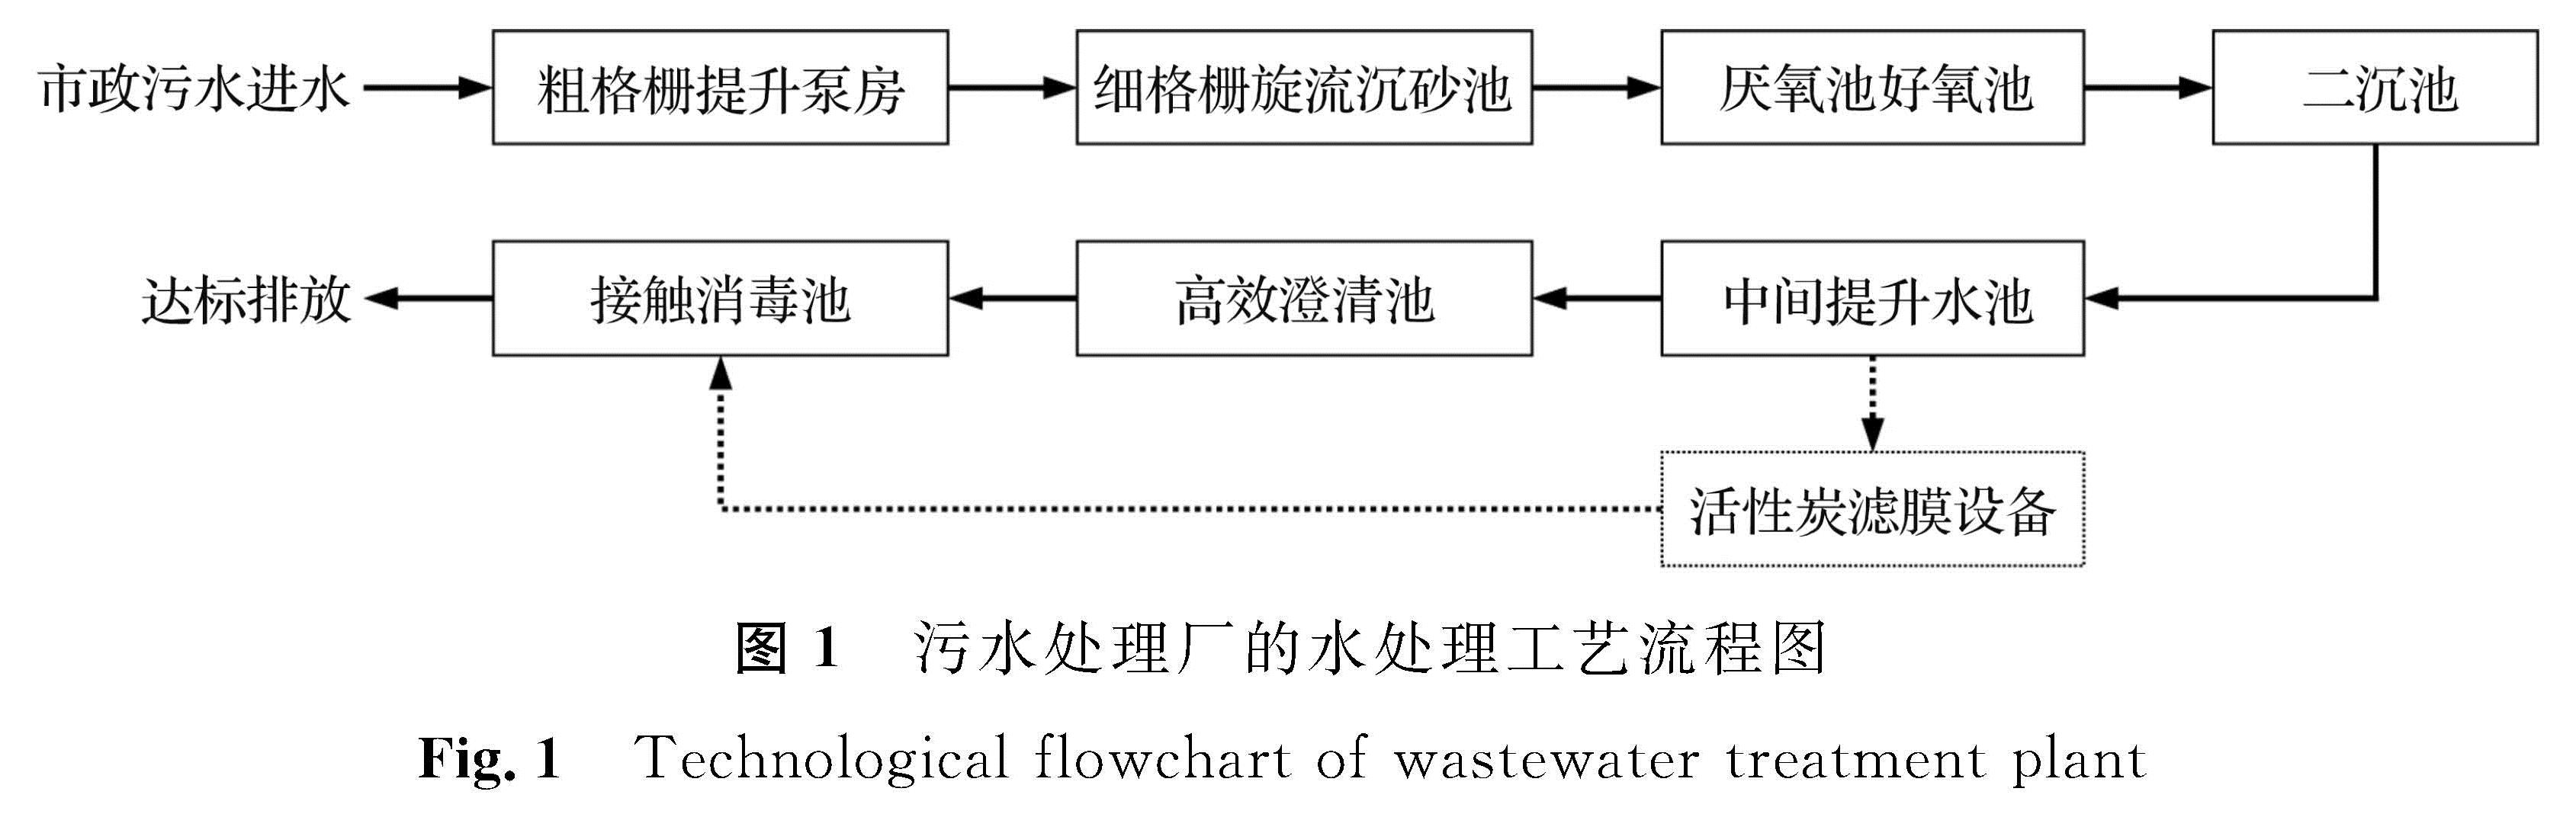 图1 污水处理厂的水处理工艺流程图<br/>Fig.1 Technological flowchart of wastewater treatment plant